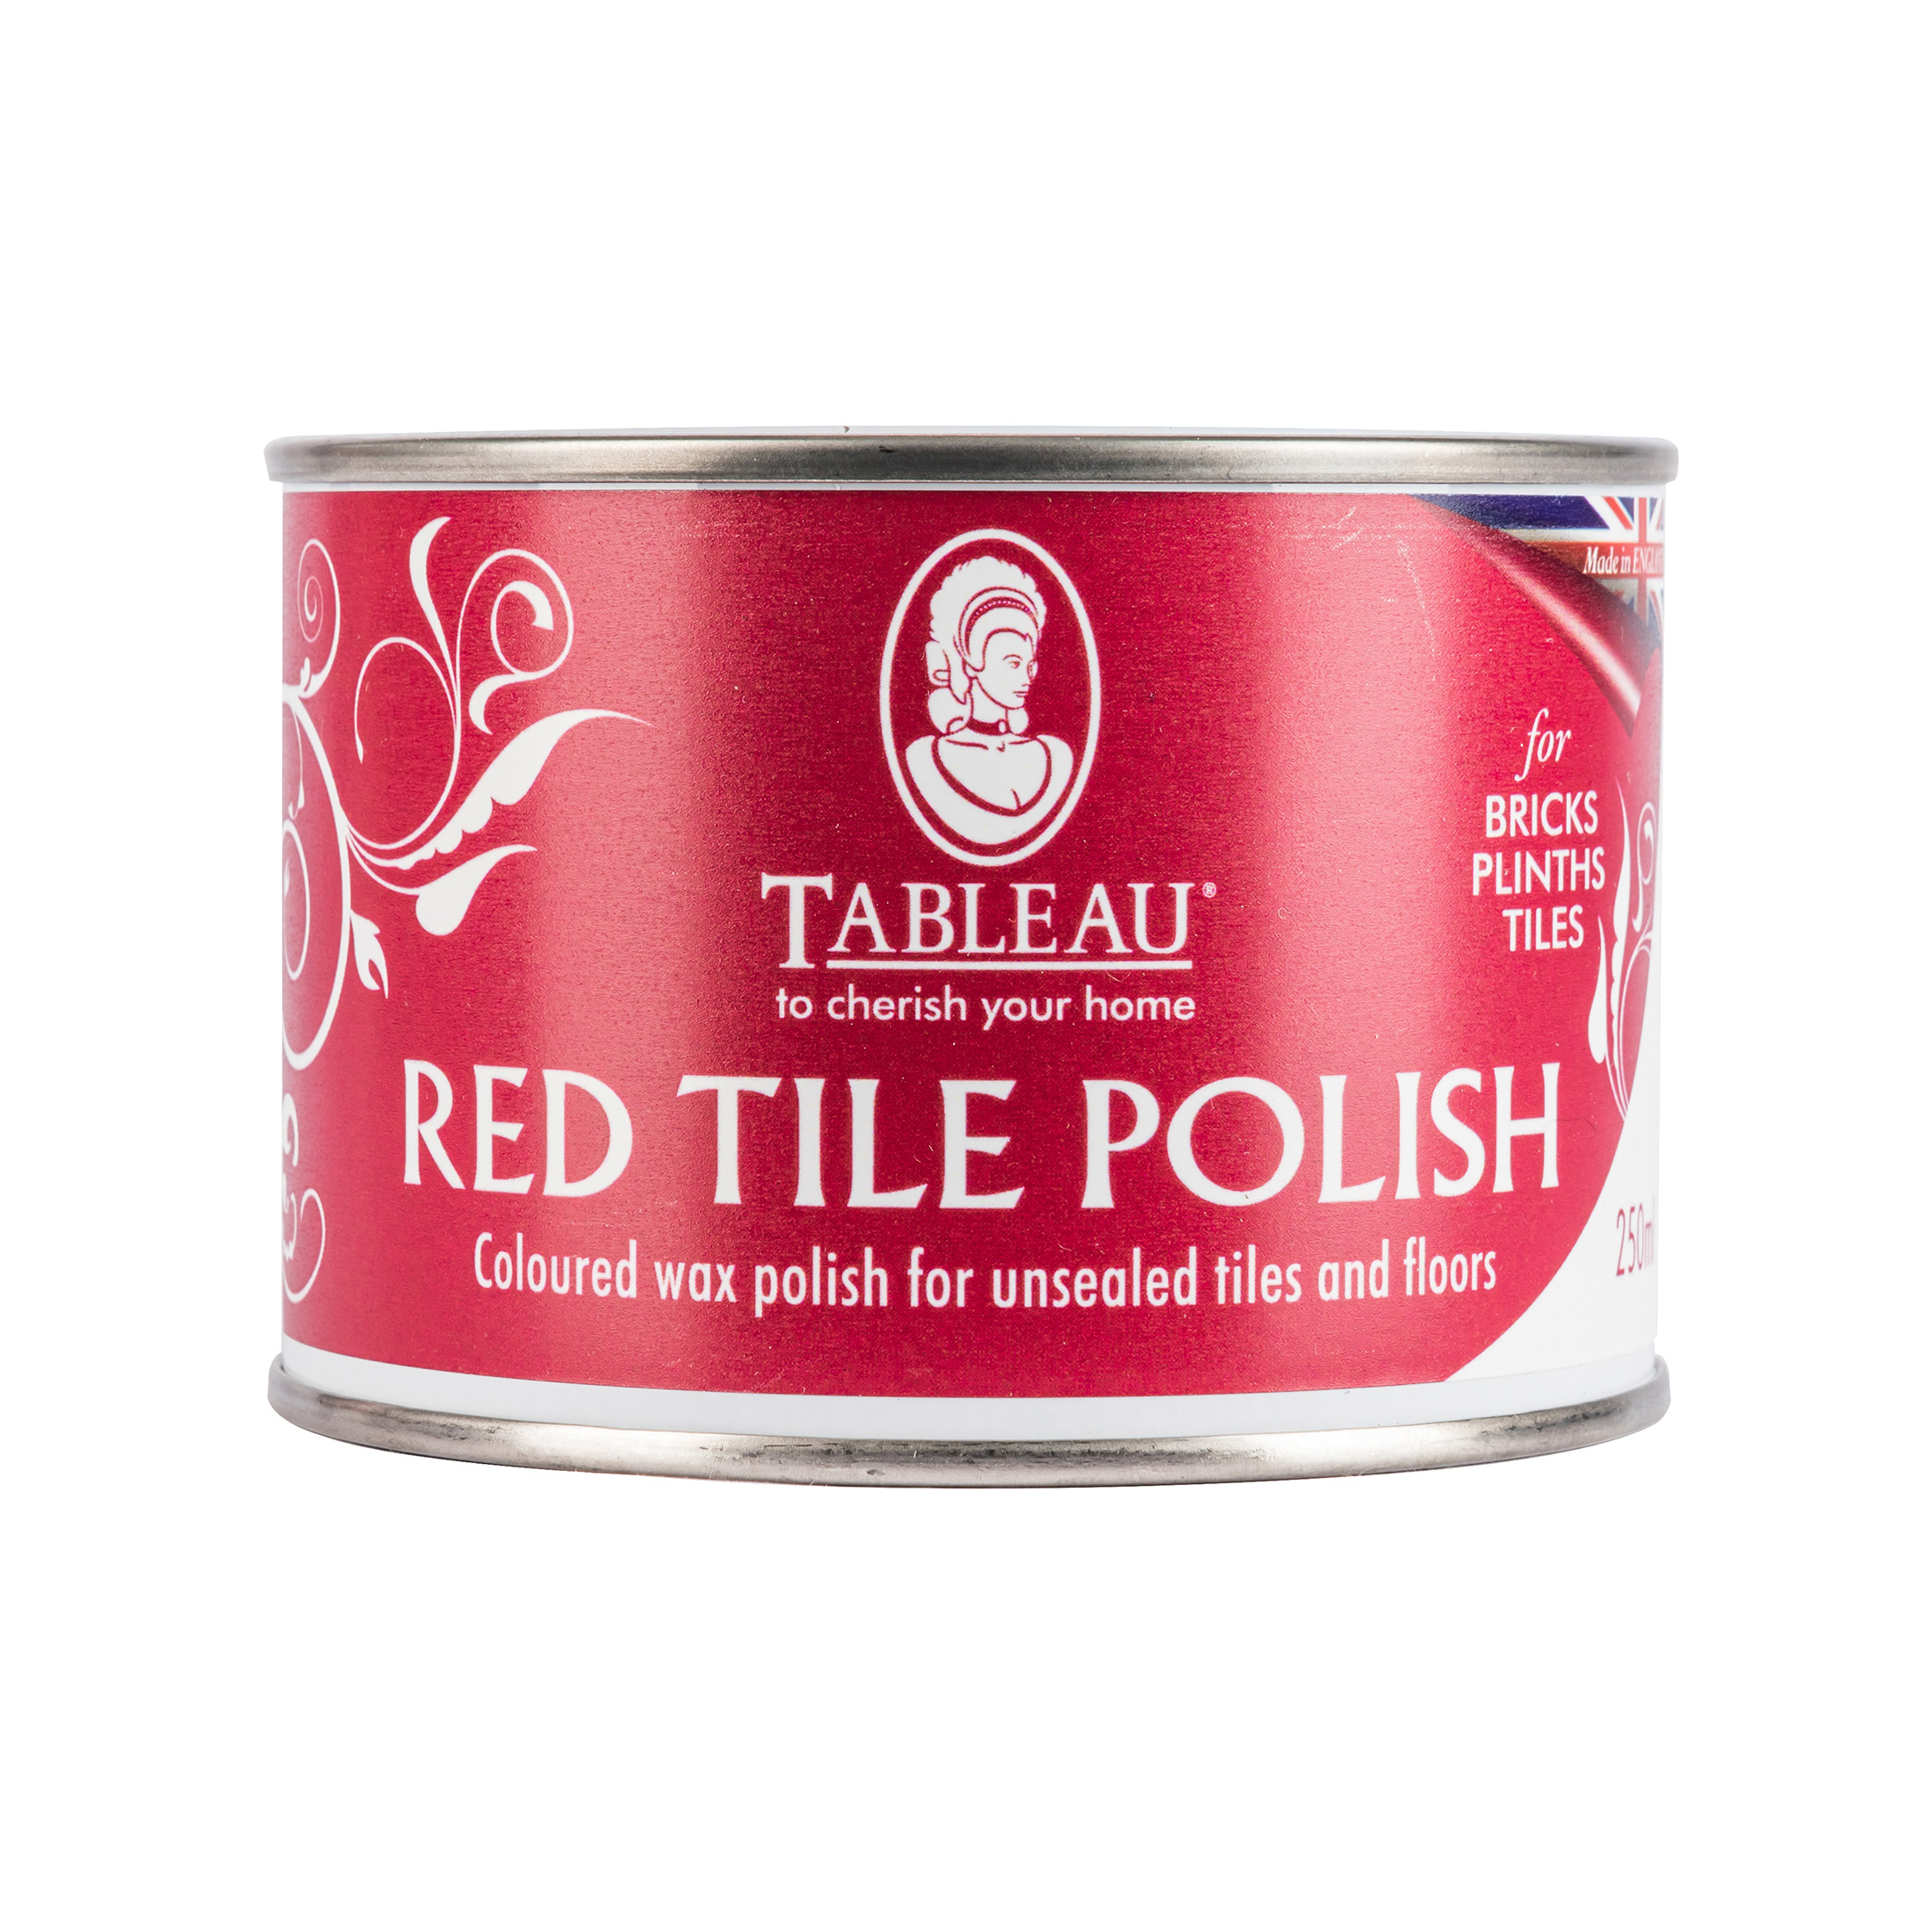 Red Tile Polish